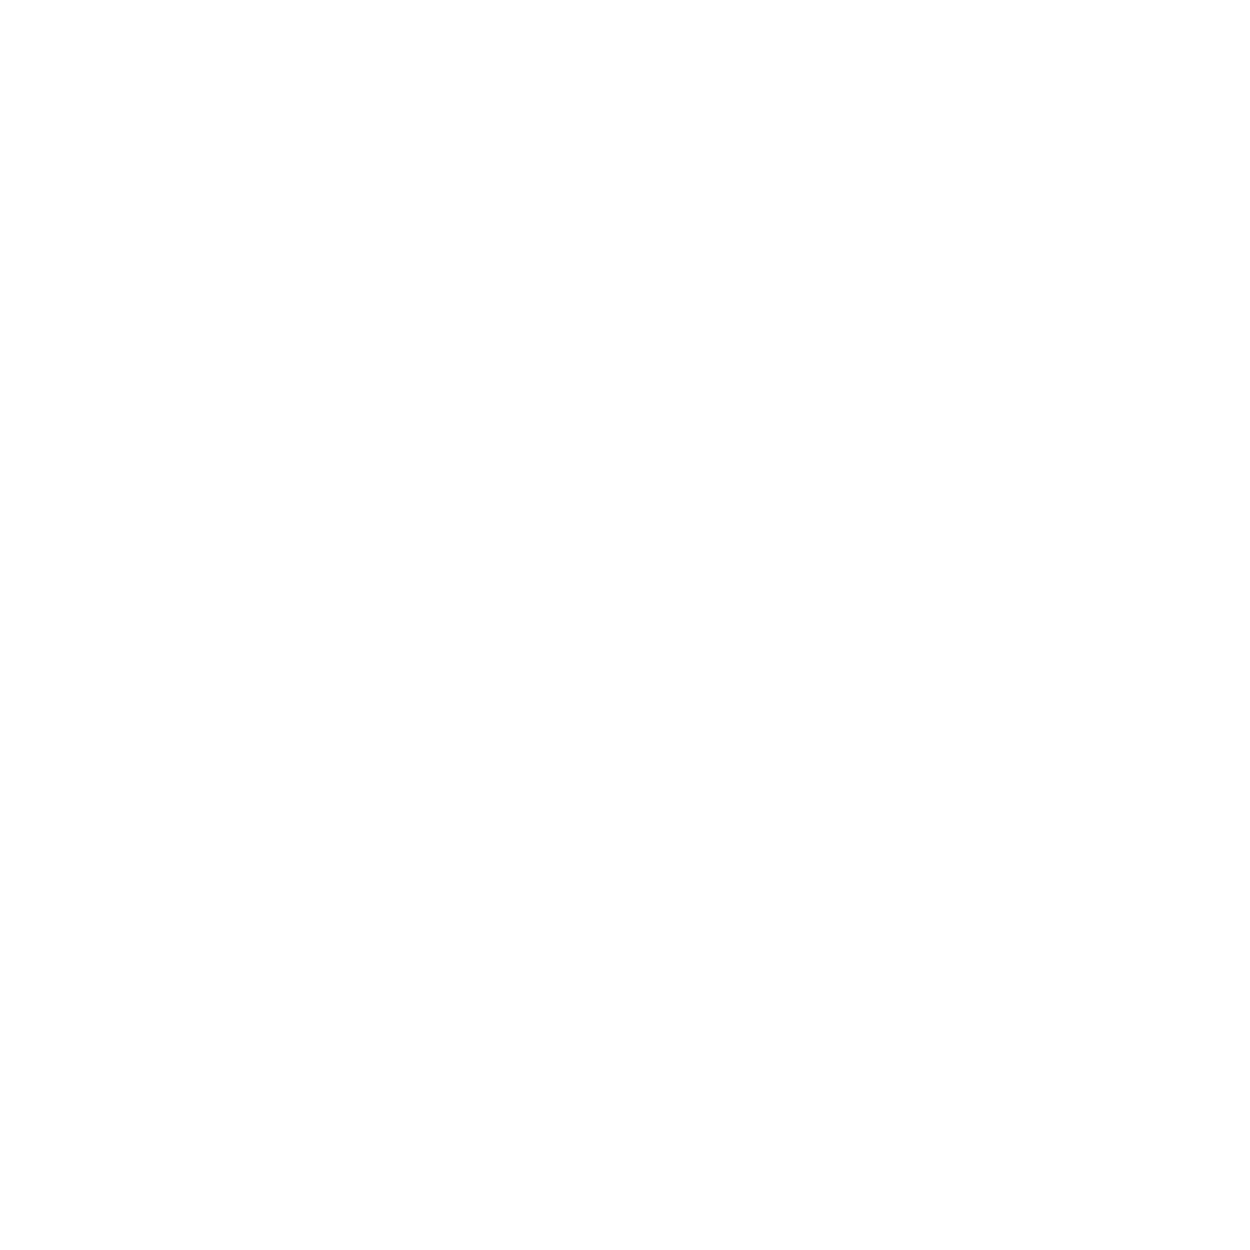  WINSTAR DISPLAY CO., LTD